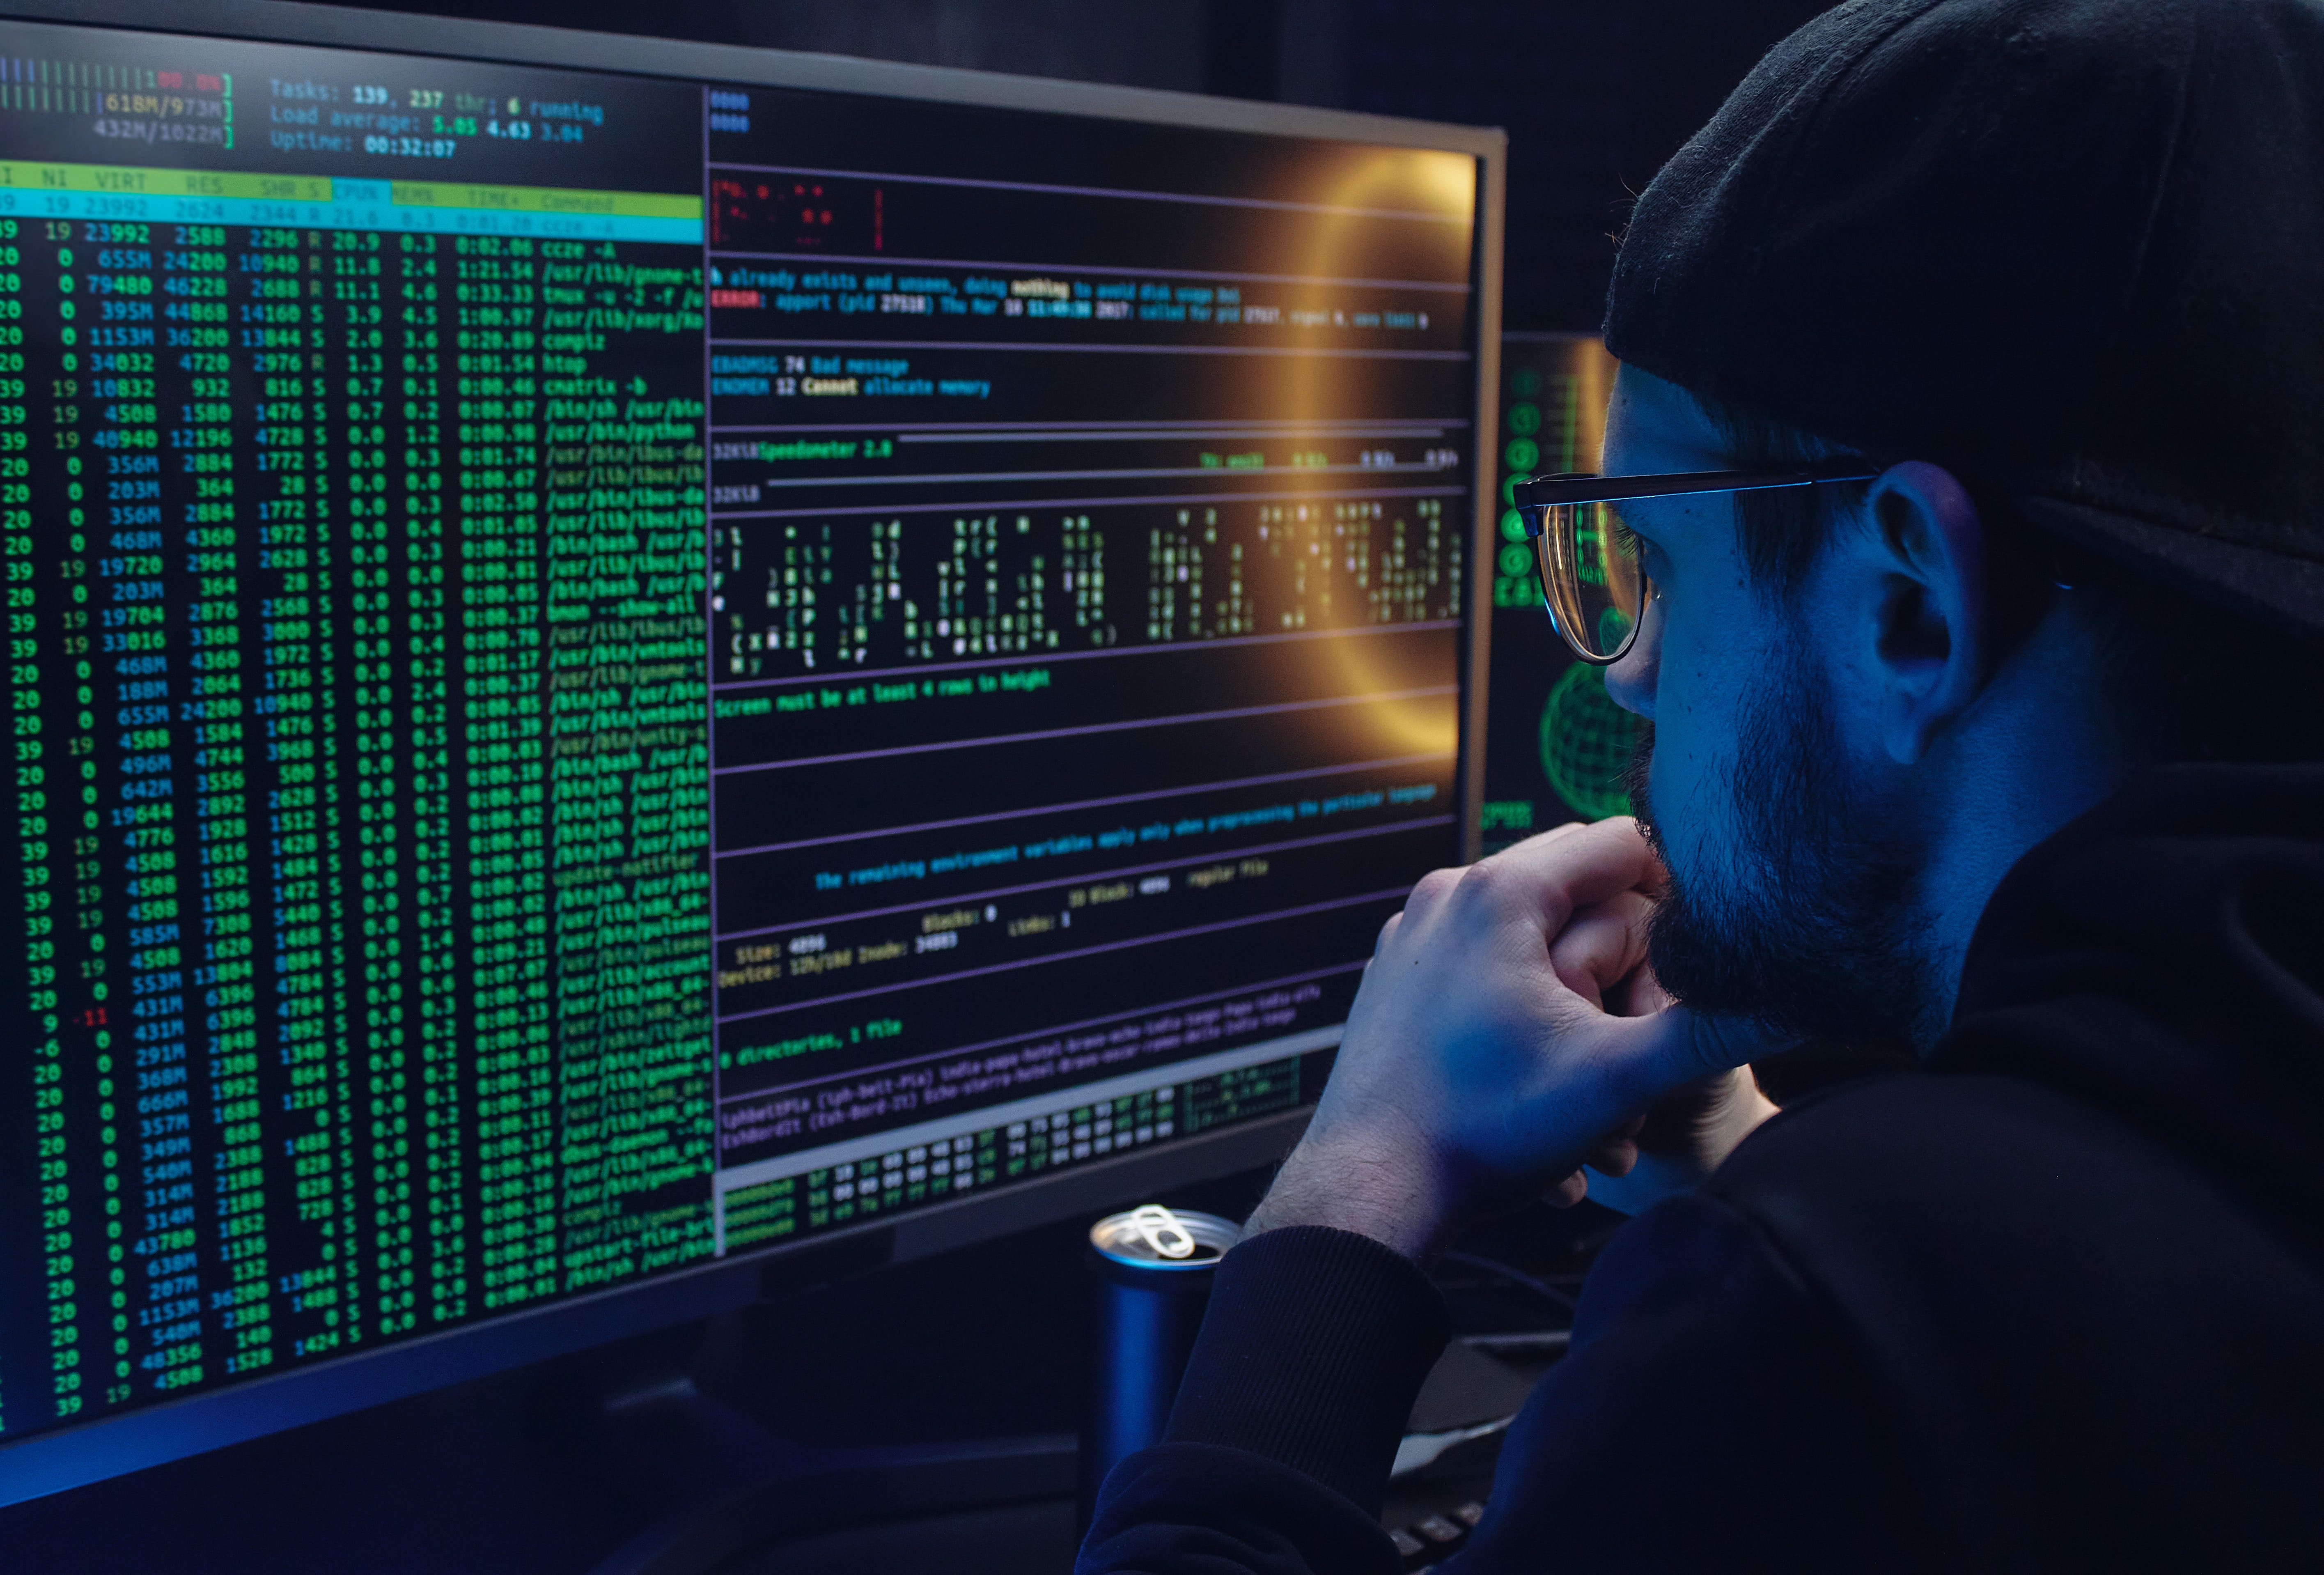 Un cybercriminel devant son ordinateur en train de programmer un maliciel